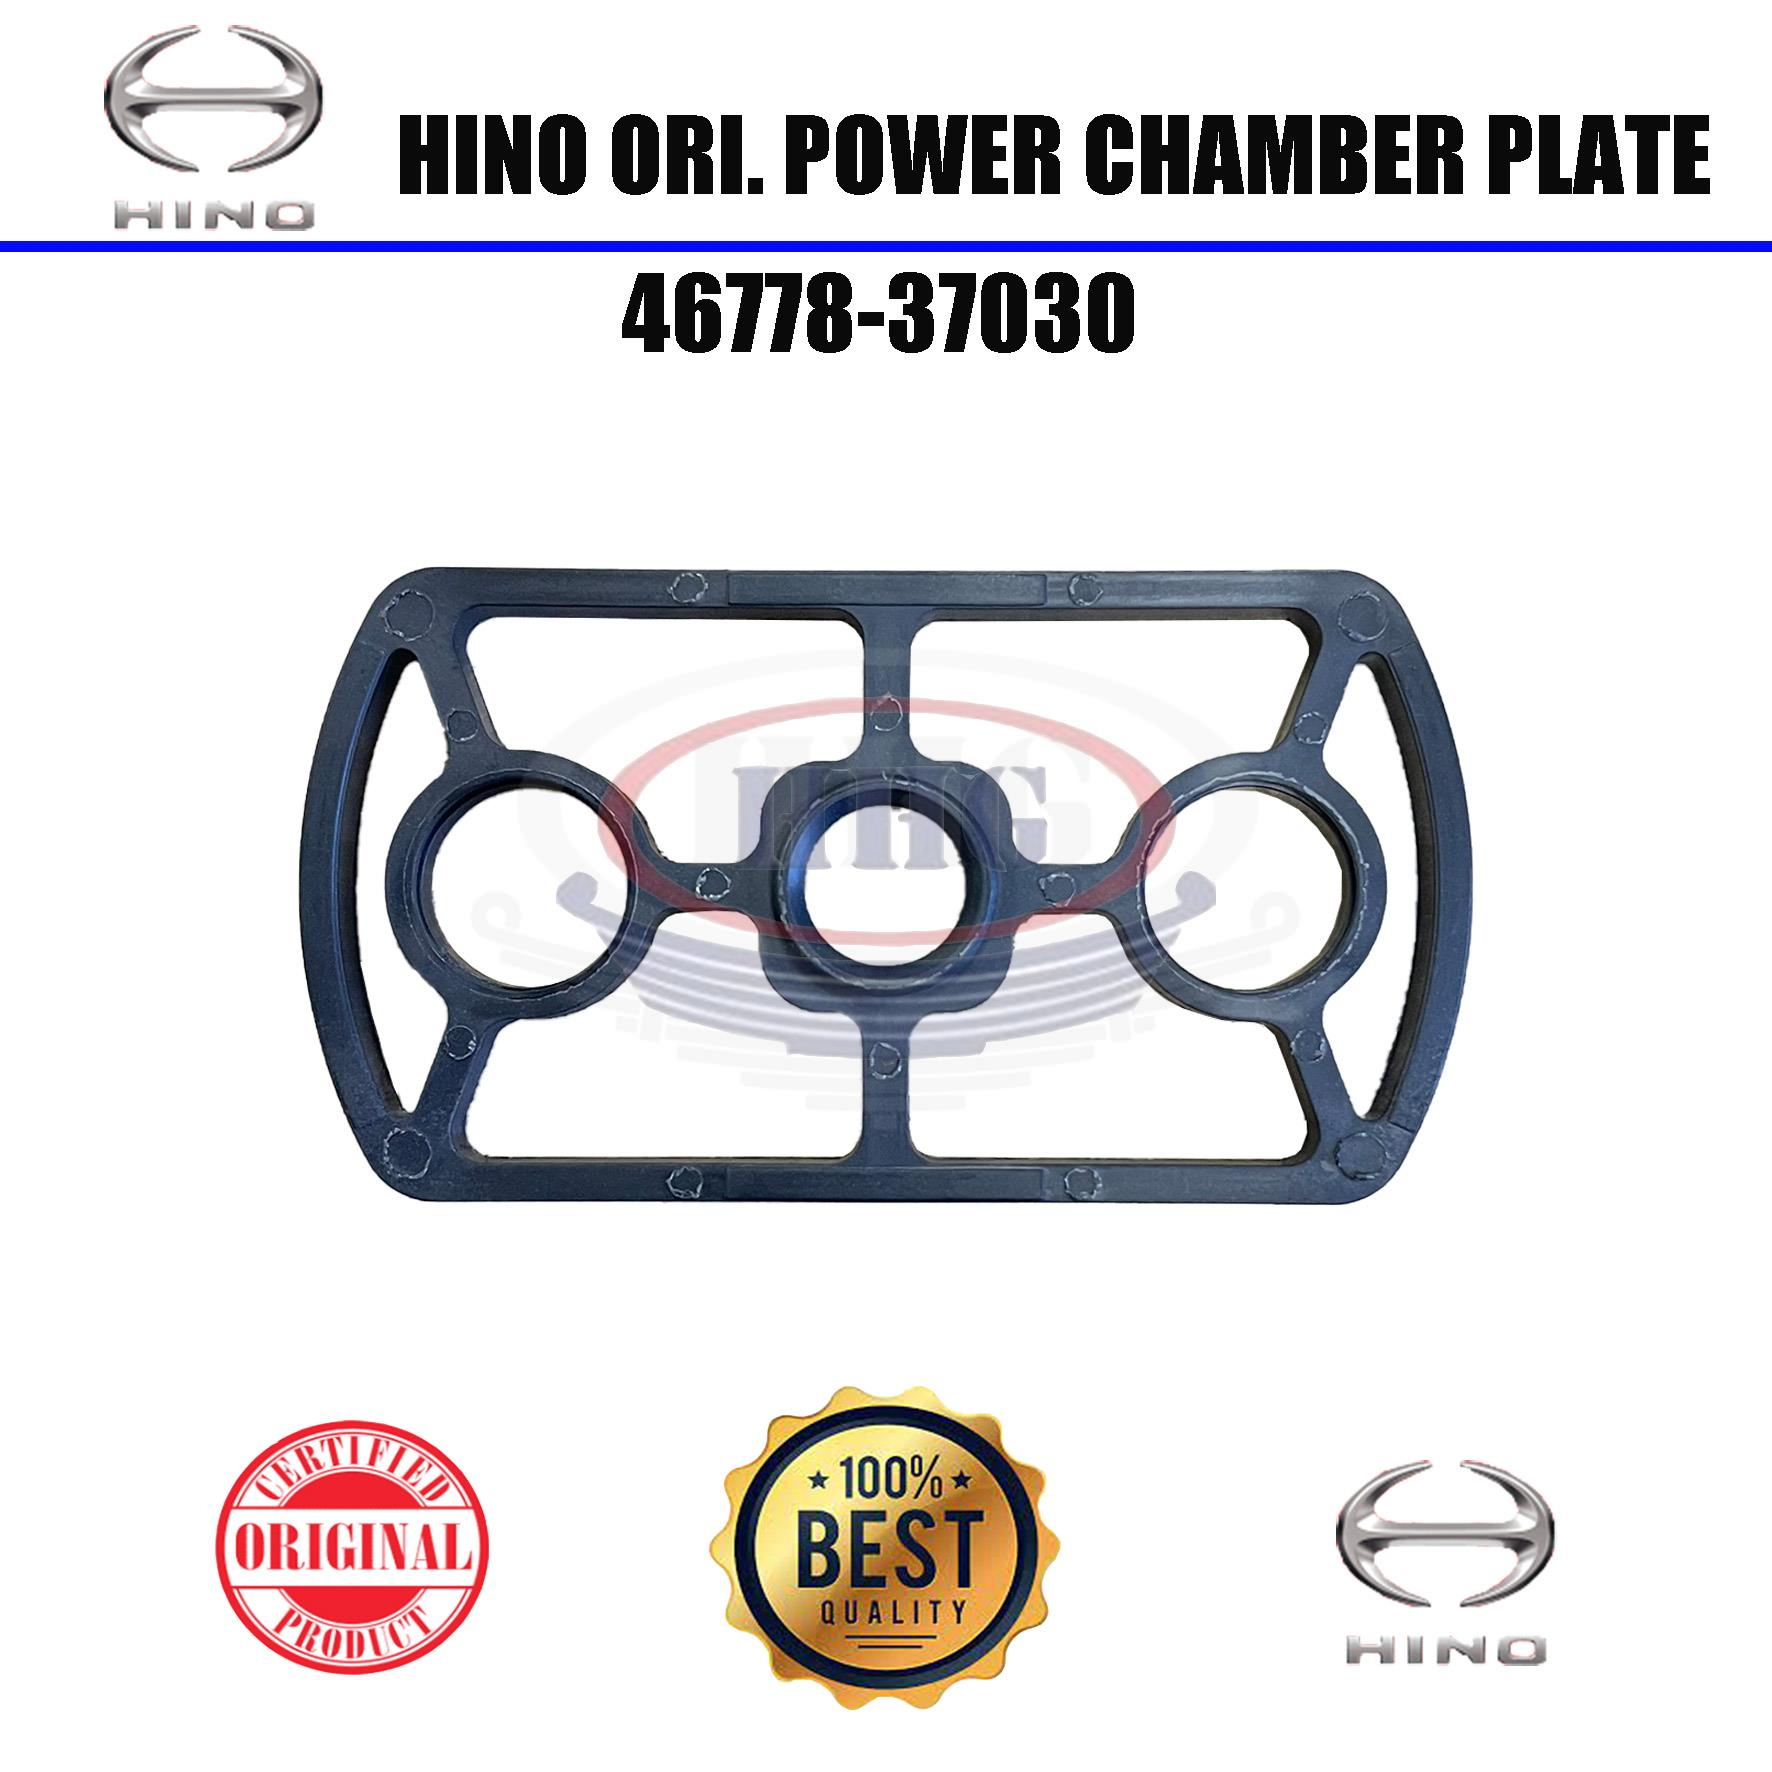 Hino Original Dutro WU410 Power Chamber Plate (46778-37030)